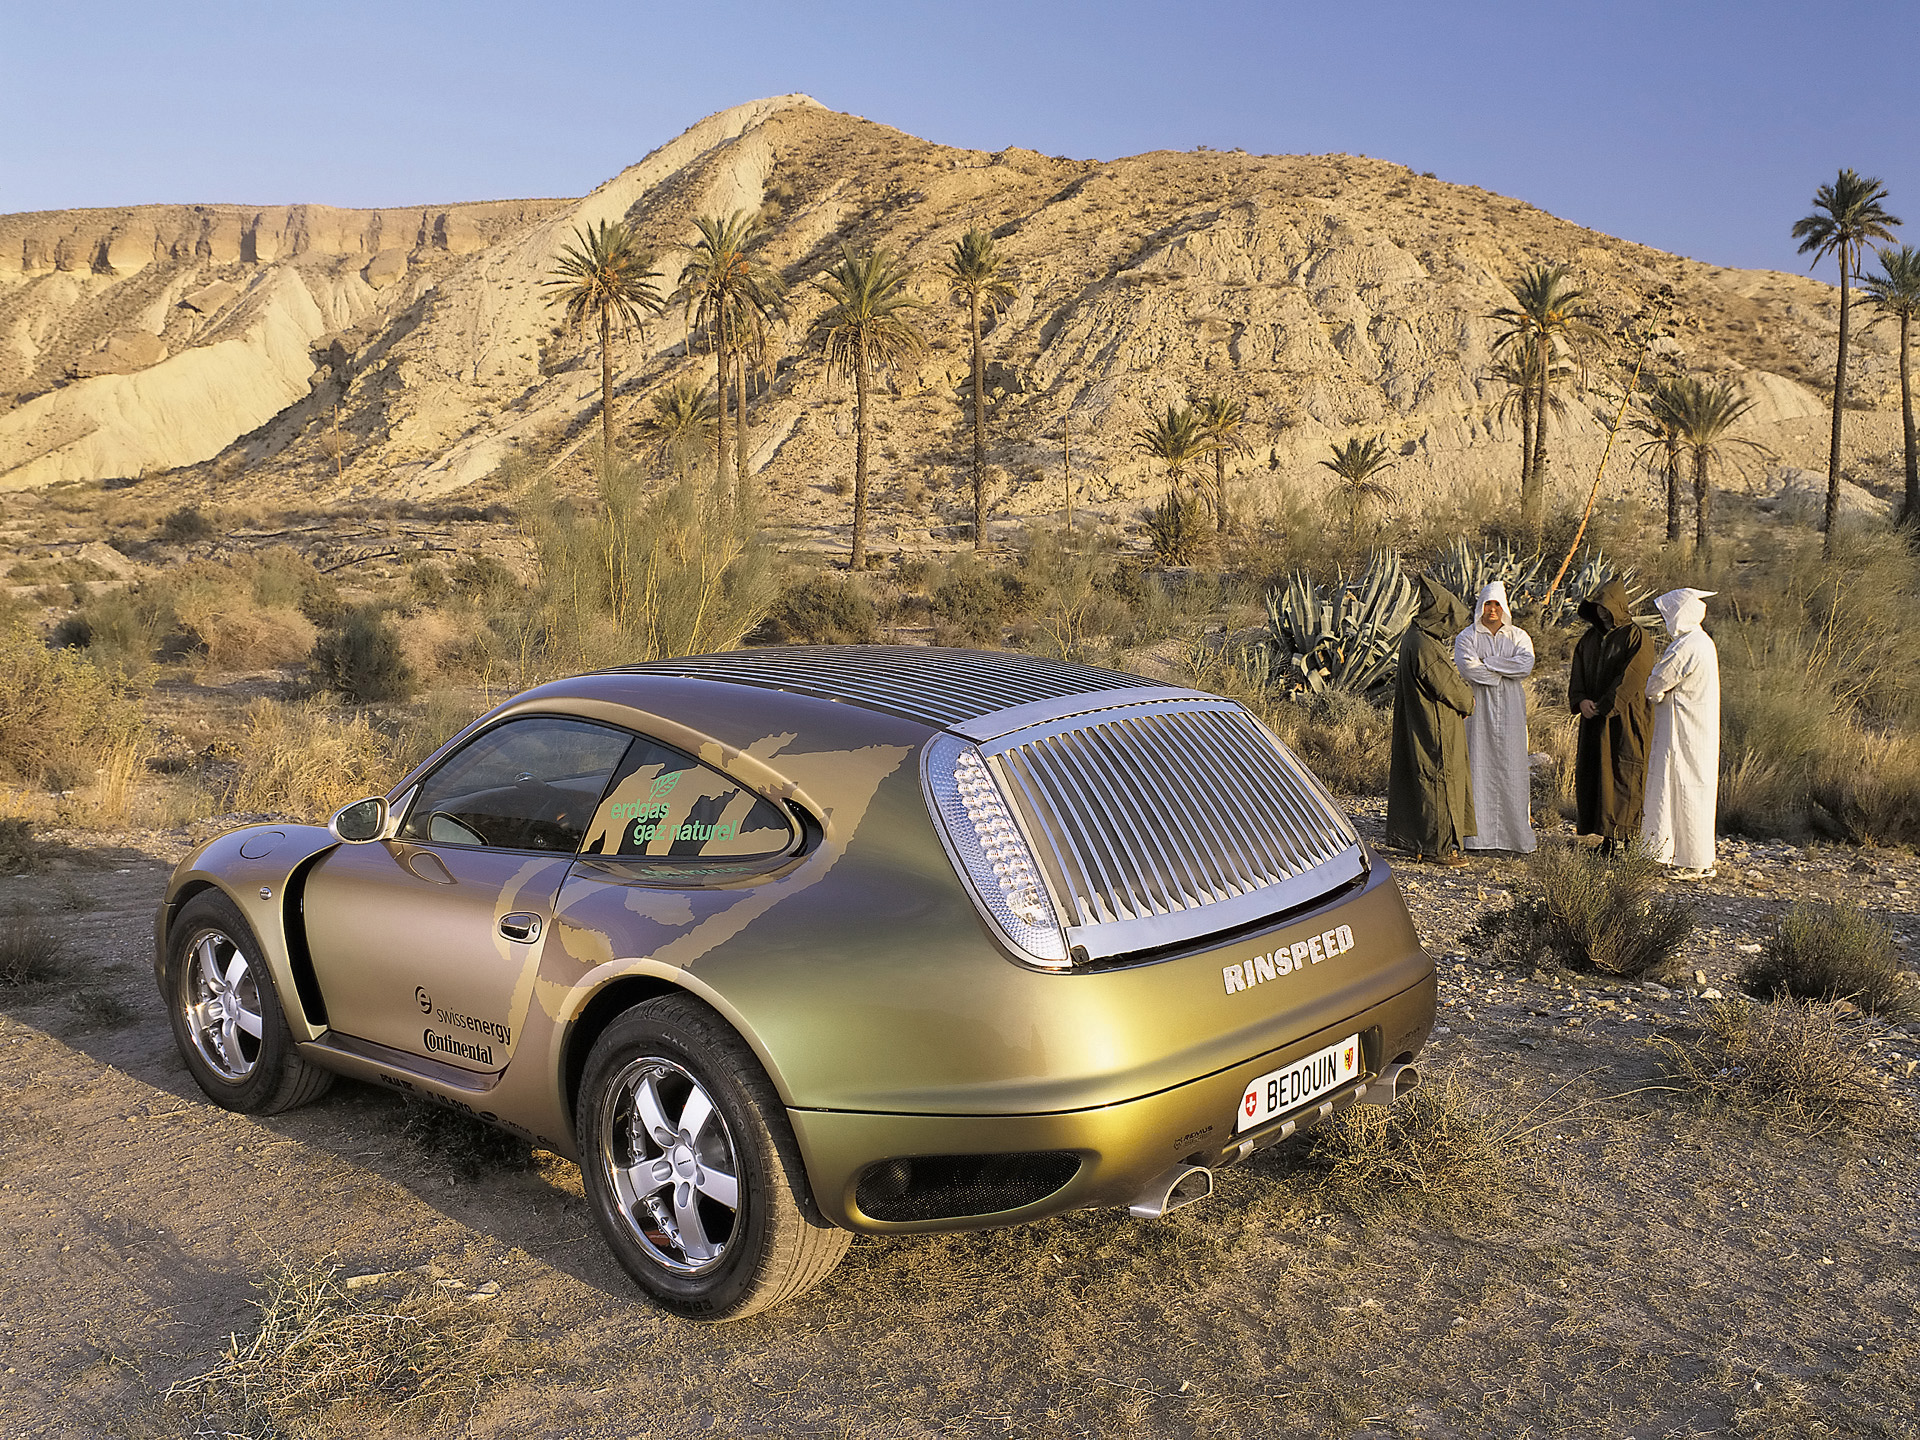 2003, Rinspeed, Porsche, Bedouin, 996, Turbo, Concept, Supercar Wallpaper